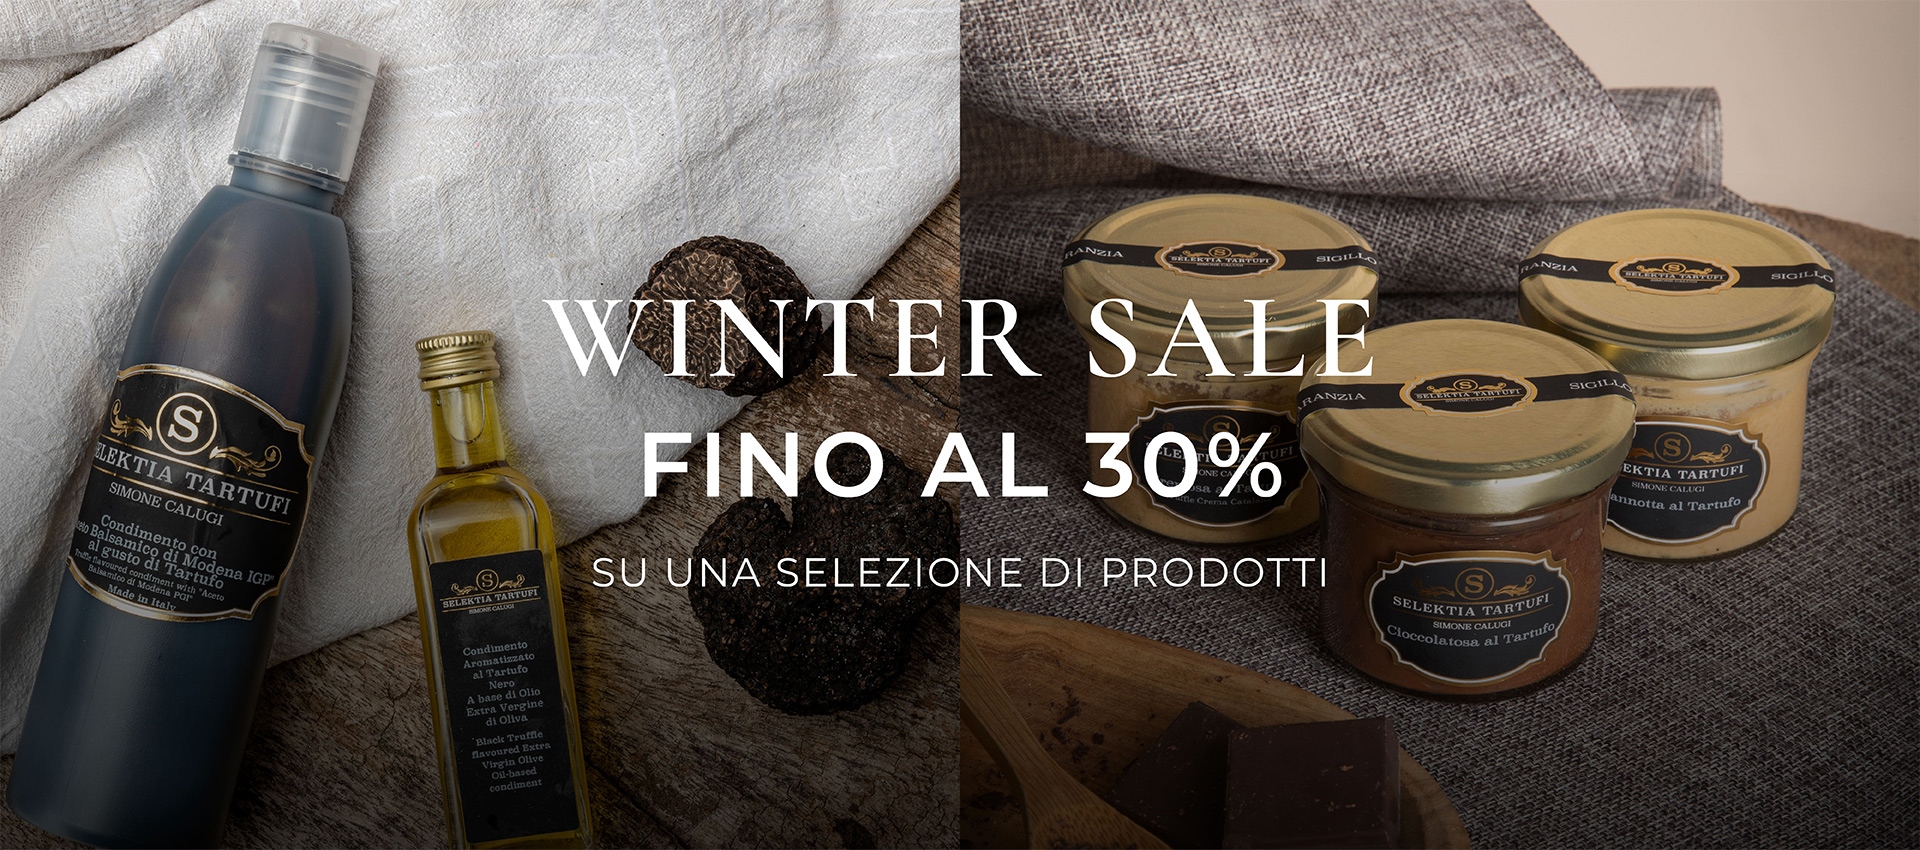 banner-winter-sale